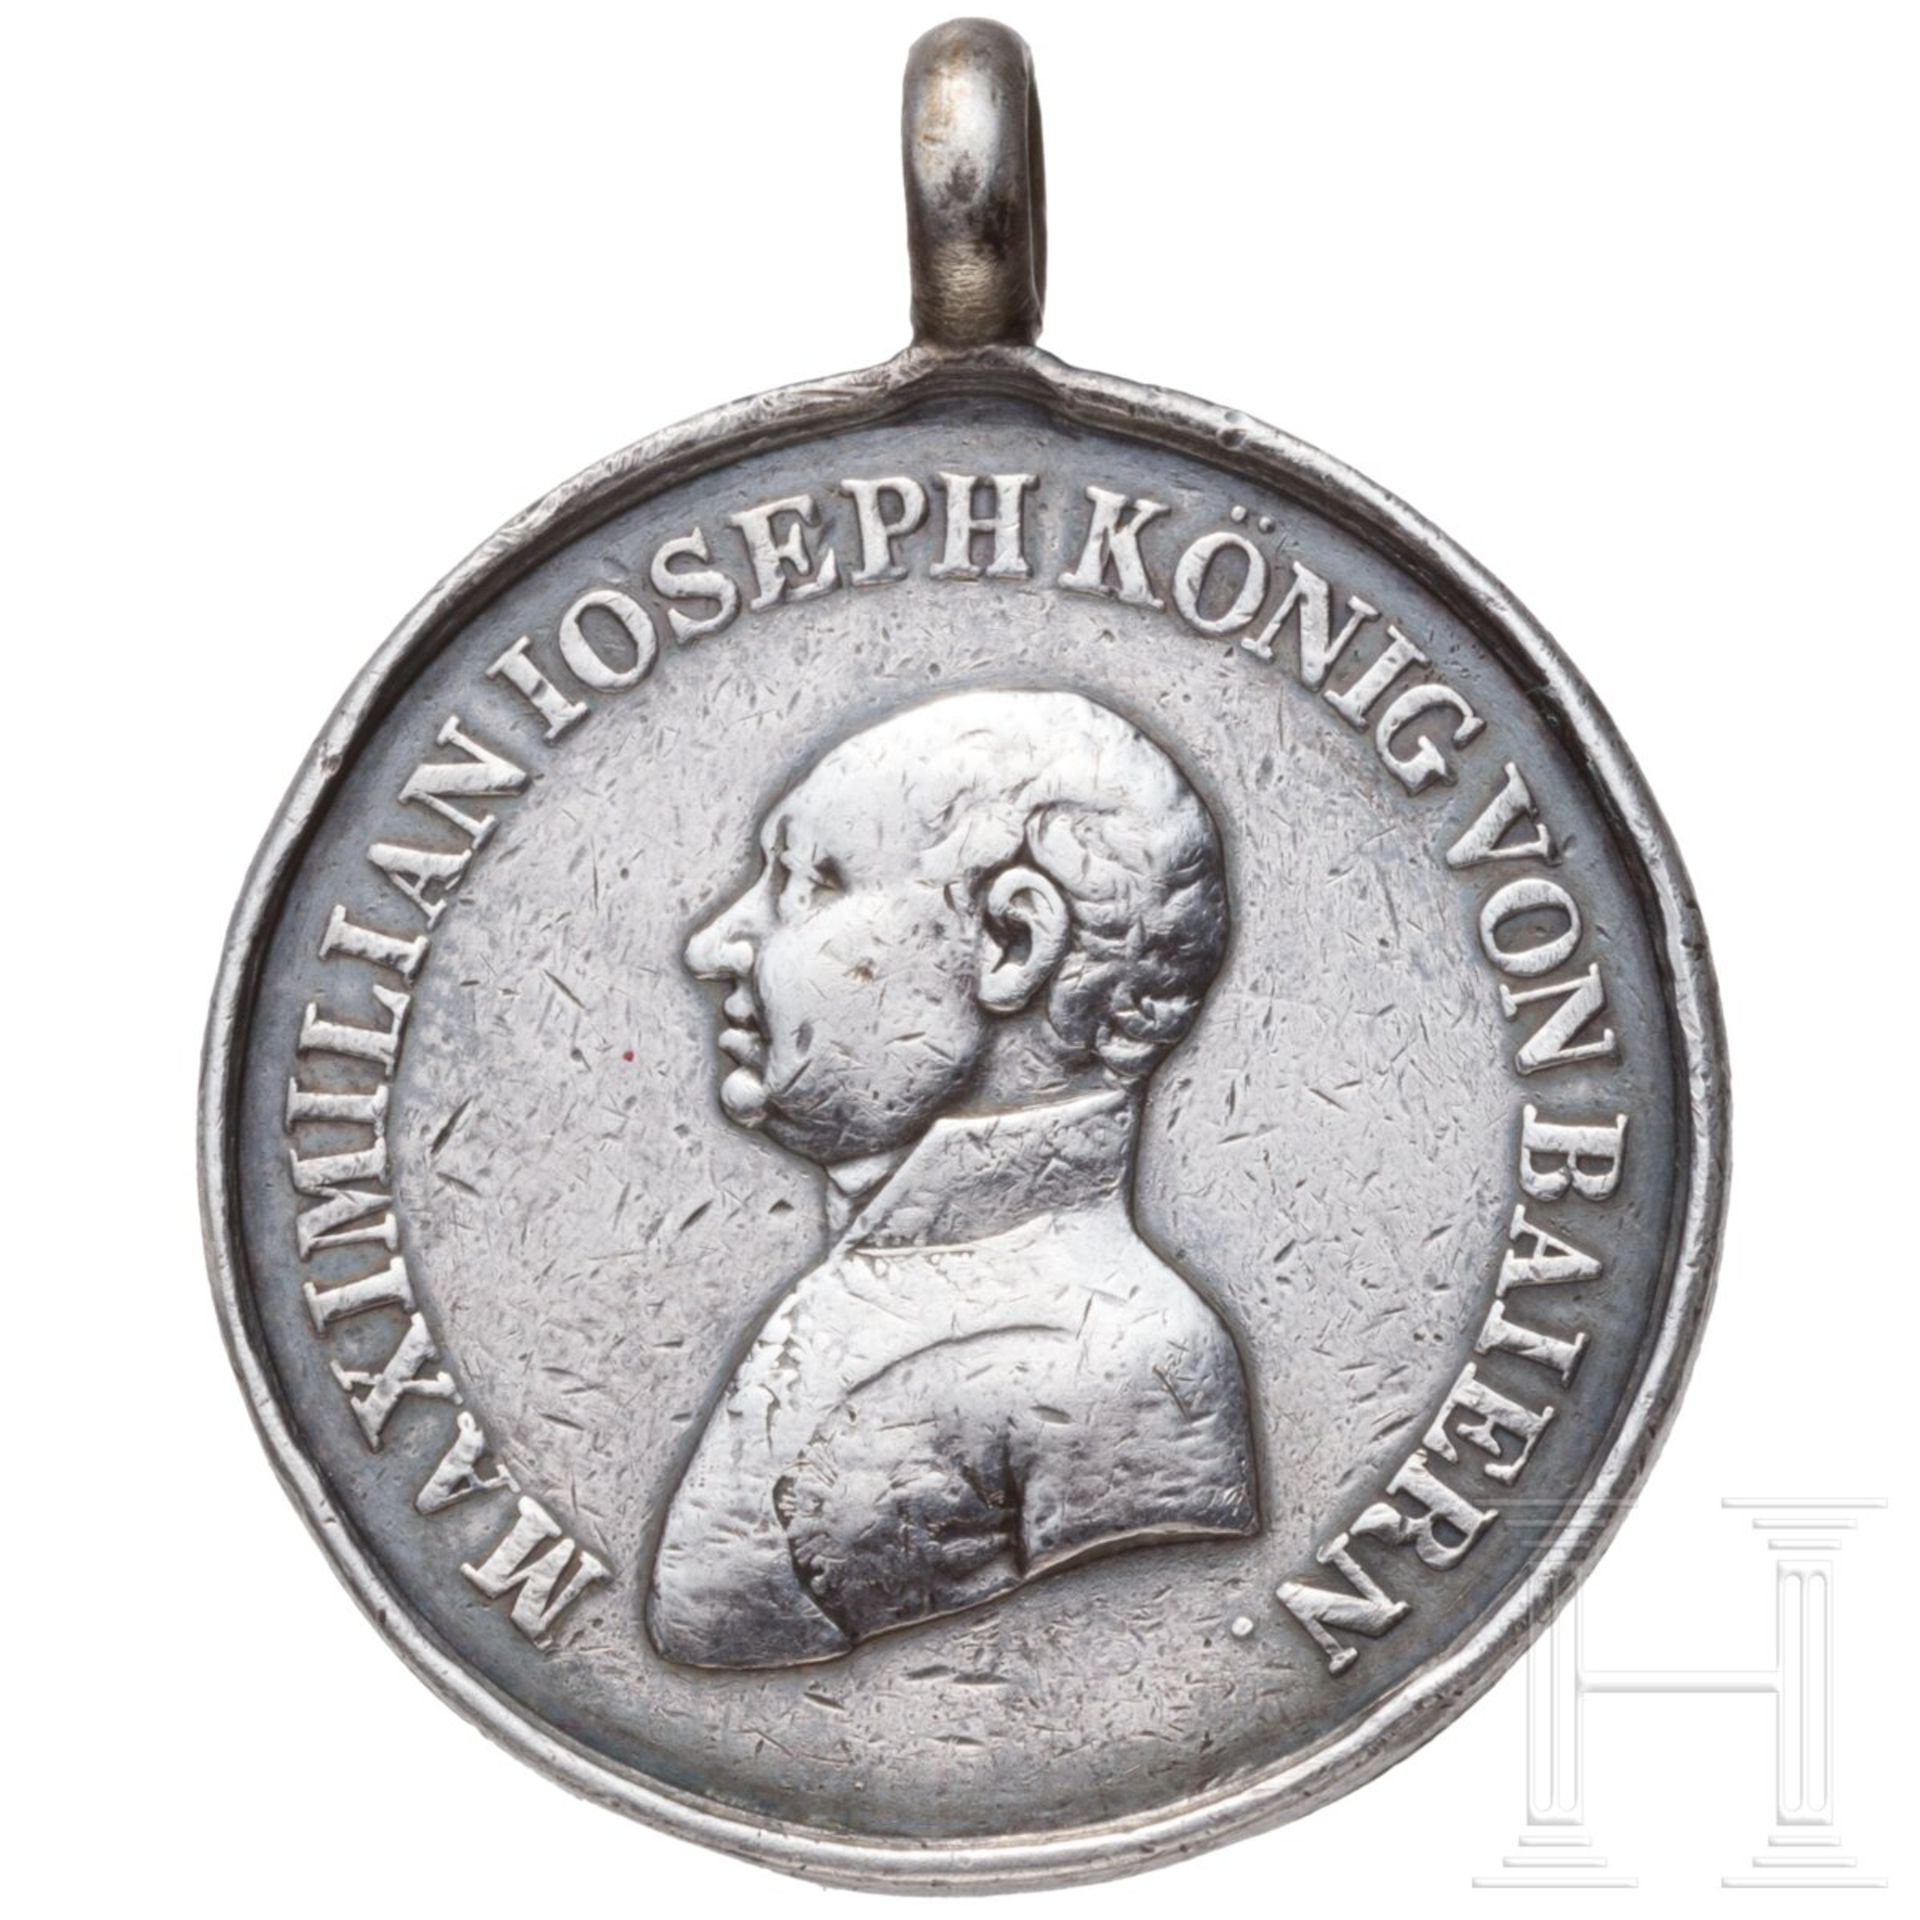 Bayerische Silberne Militär-Verdienst-Medaille oder "Tapferkeitsmedaille" - Image 2 of 3